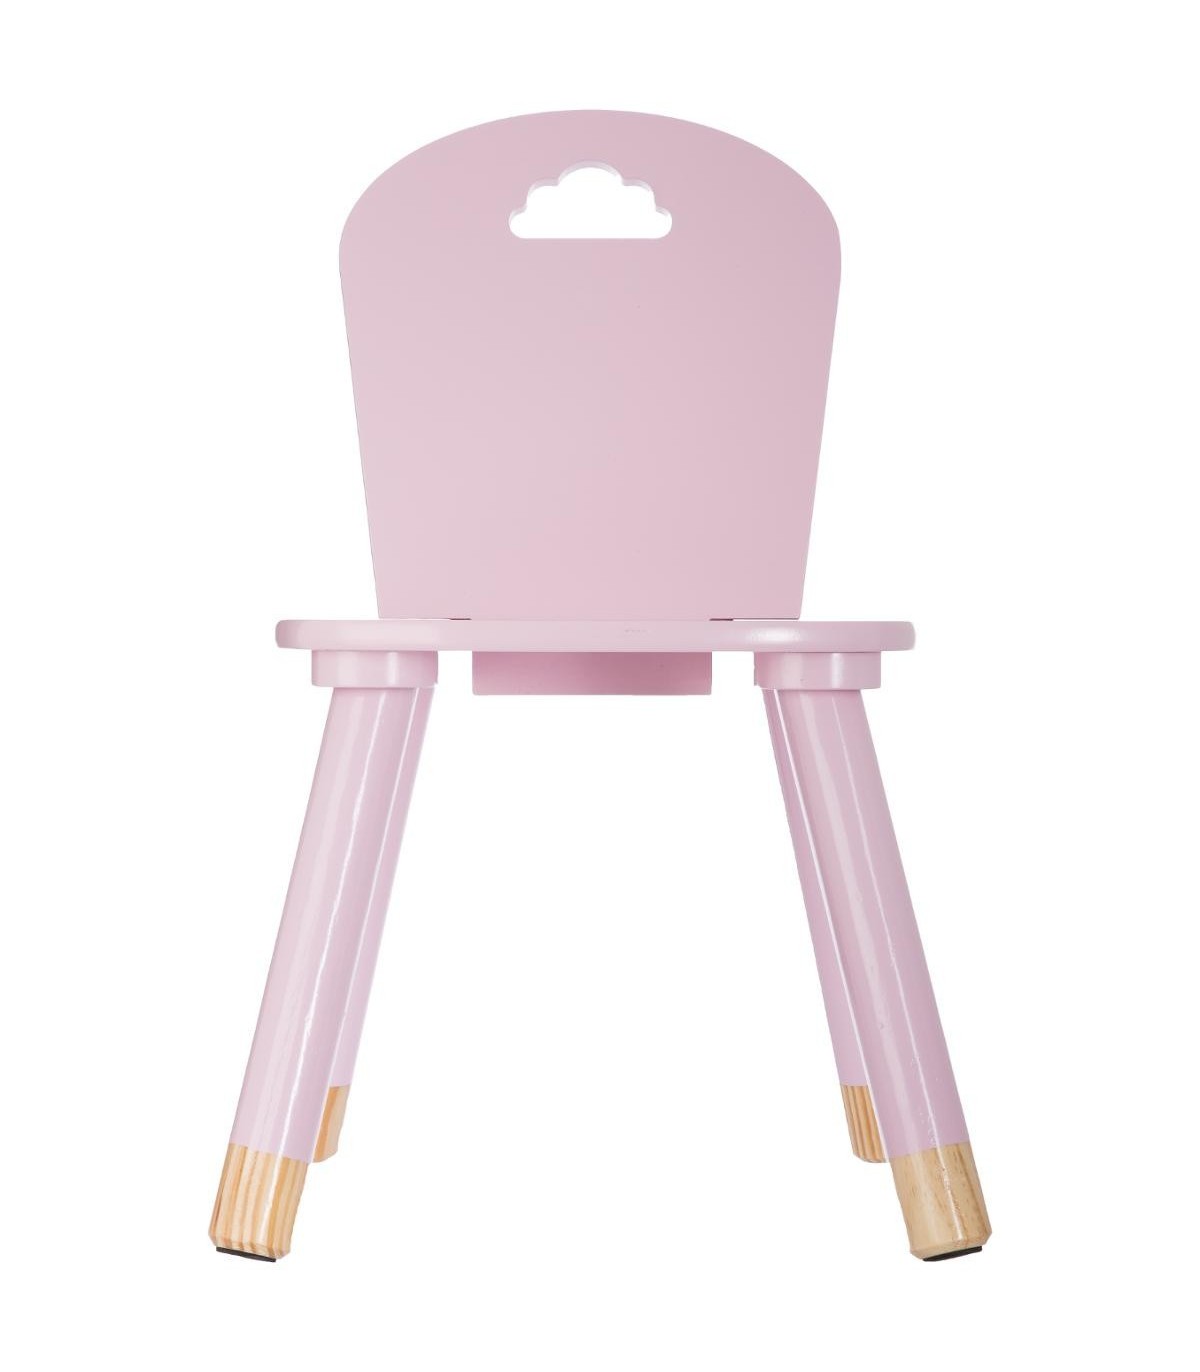 Mesas y sillas infantiles Nube - Envío Rápido y Gratuito